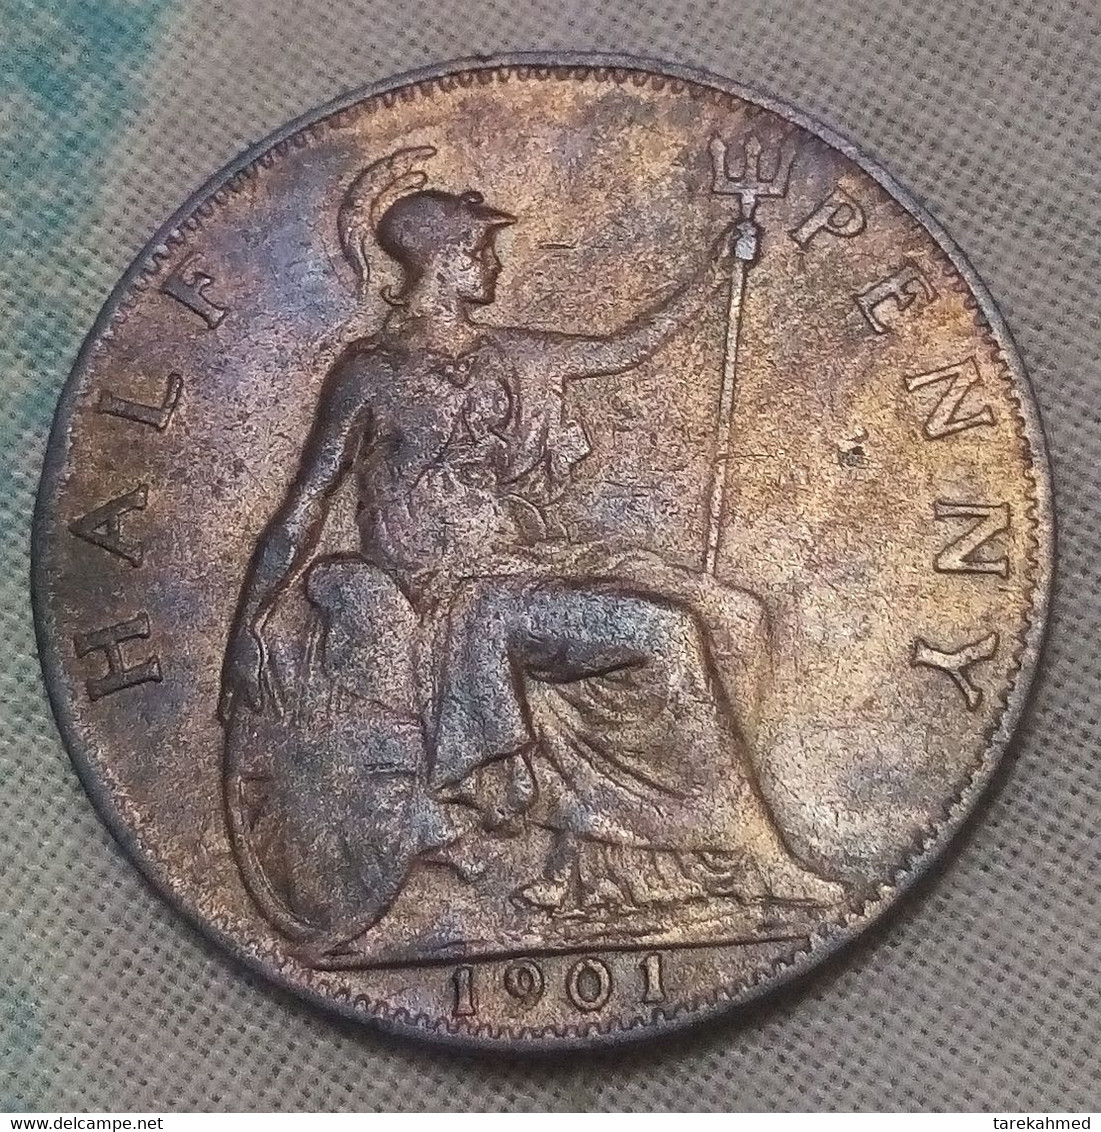 Grande-Bretagne, Victoria, 1/2 Penny, 1901, UNC , KM:789 ,Gomaa - C. 1/2 Penny